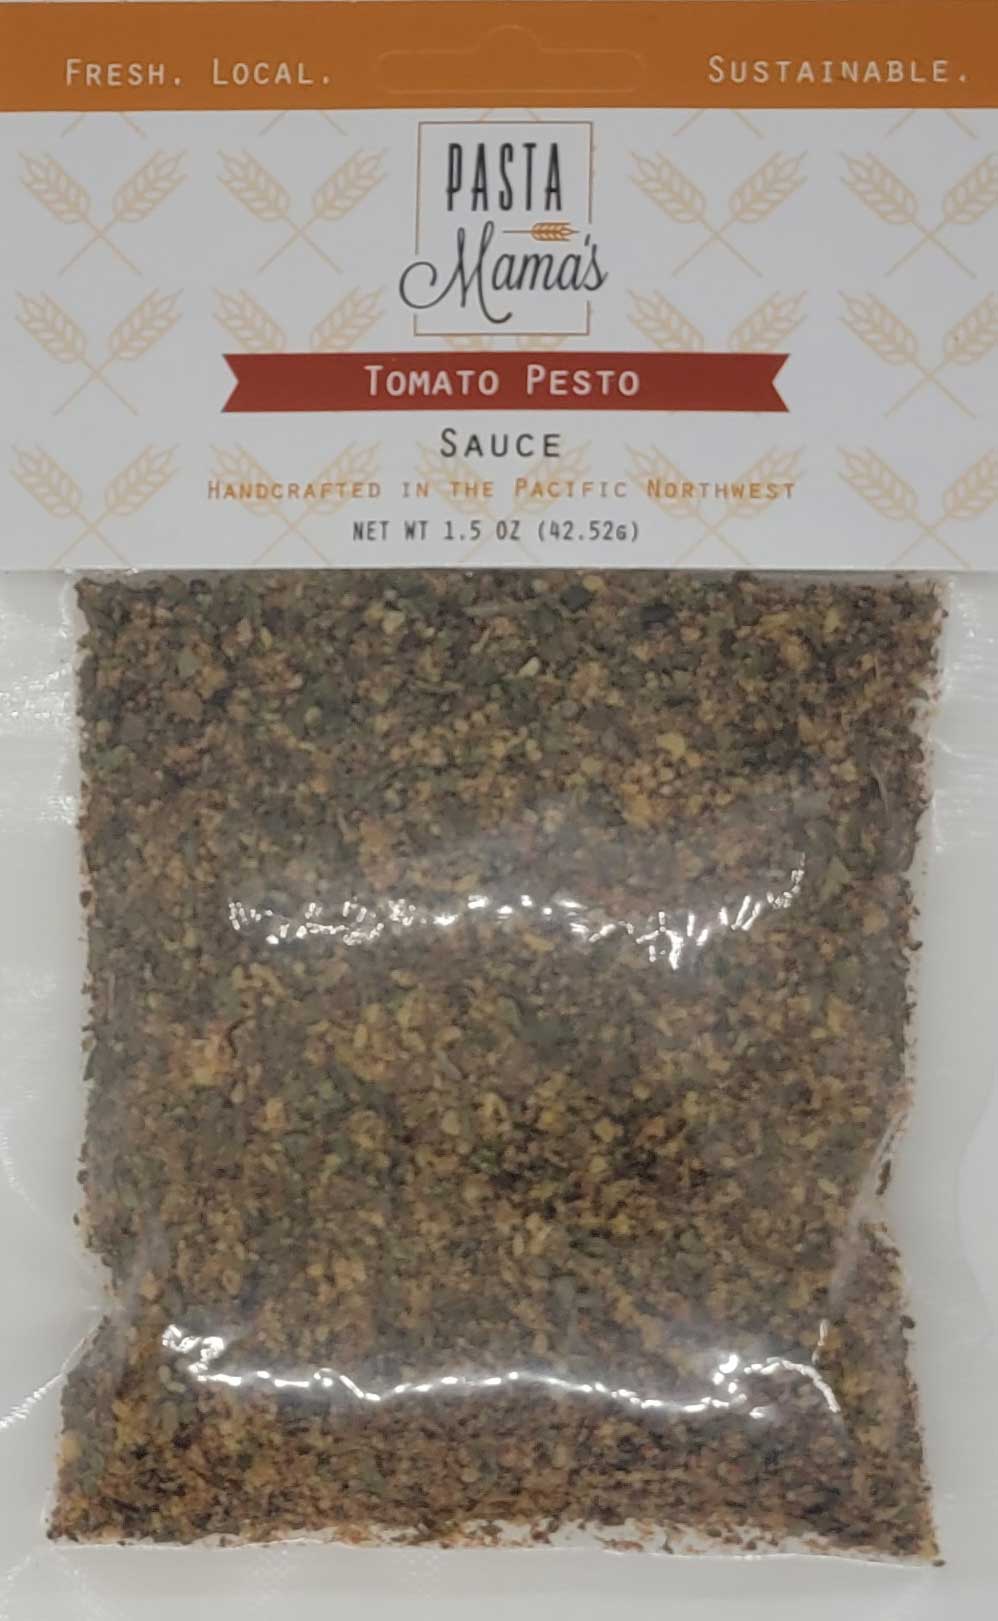 Tomato Pesto Sauce by Pasta Mama's